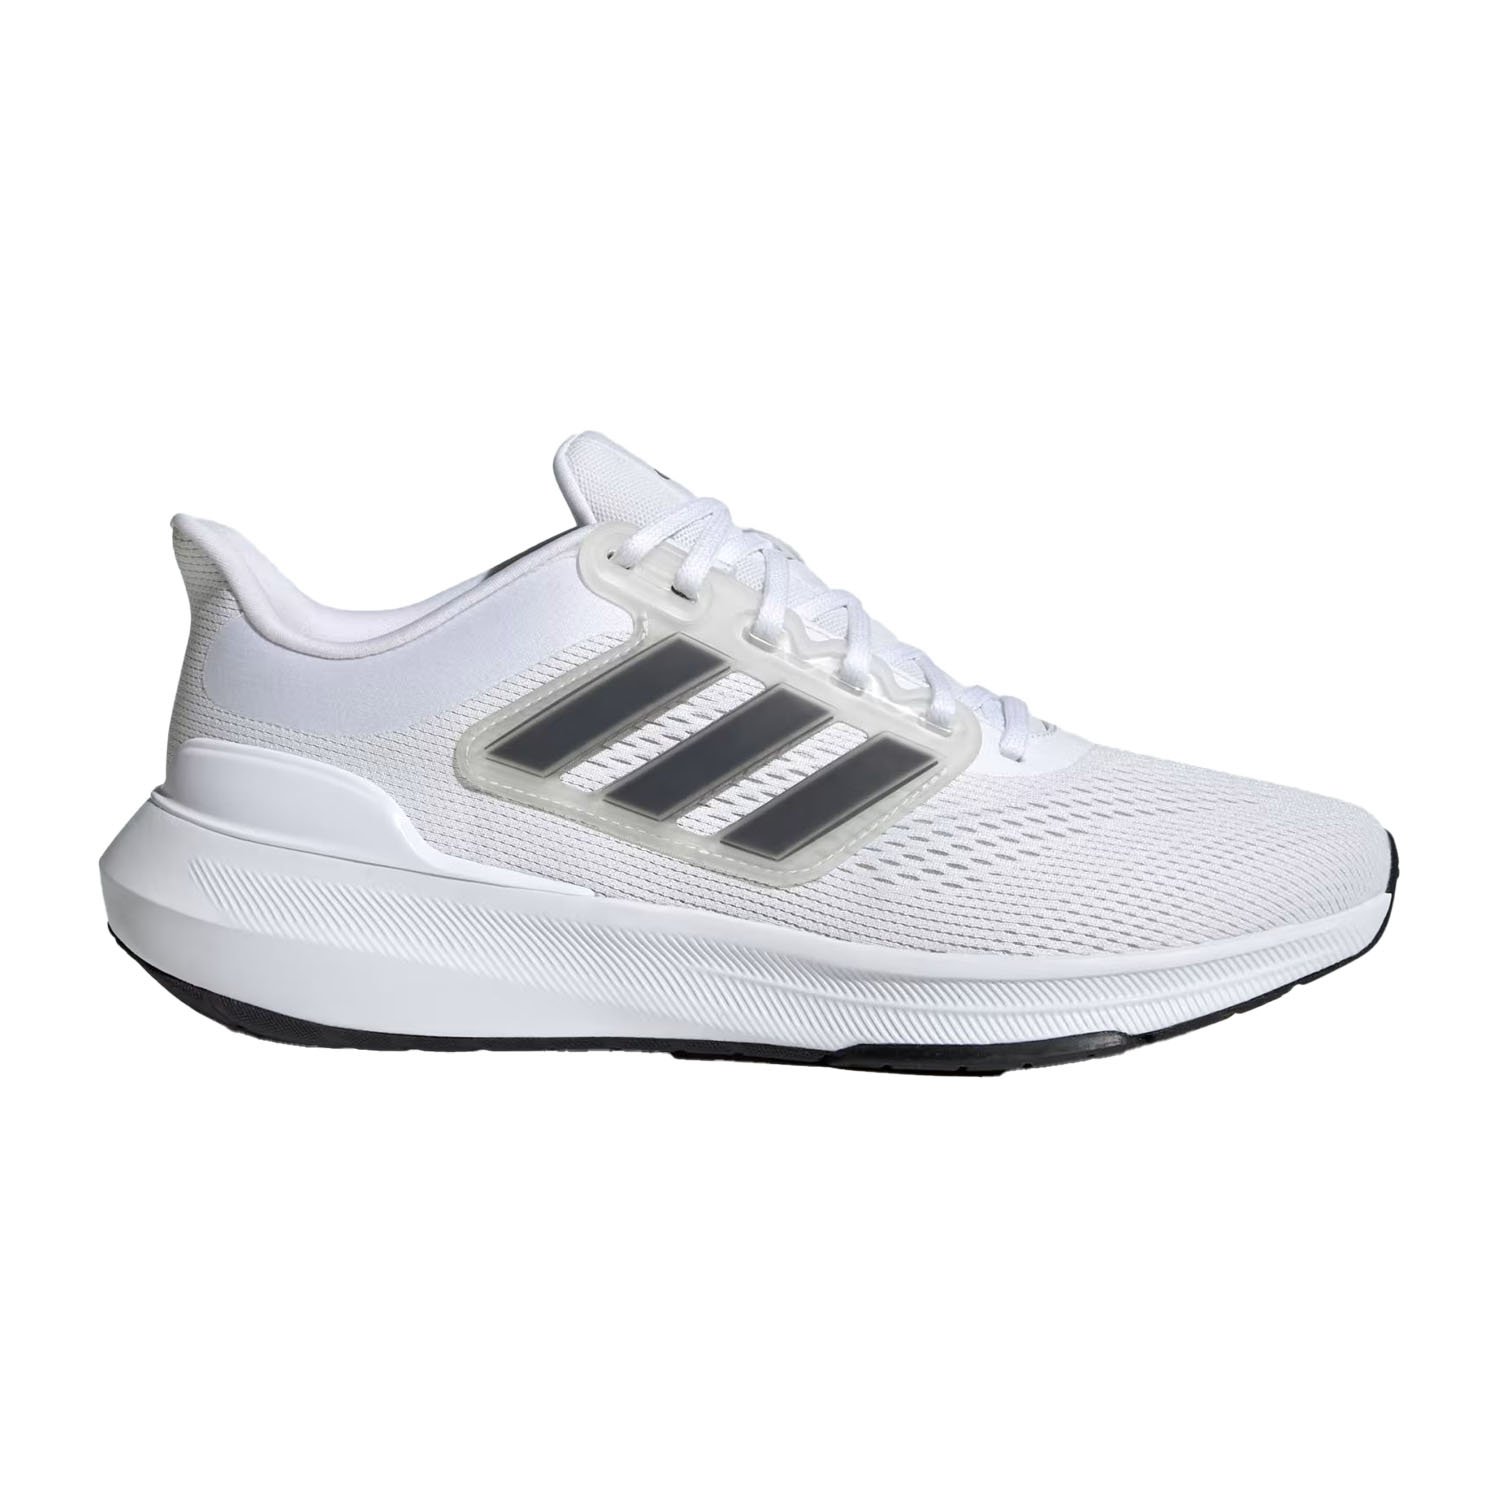 Adidas Ultrabounce Erkek Yol Koşu Ayakkabısı - Beyaz - 1